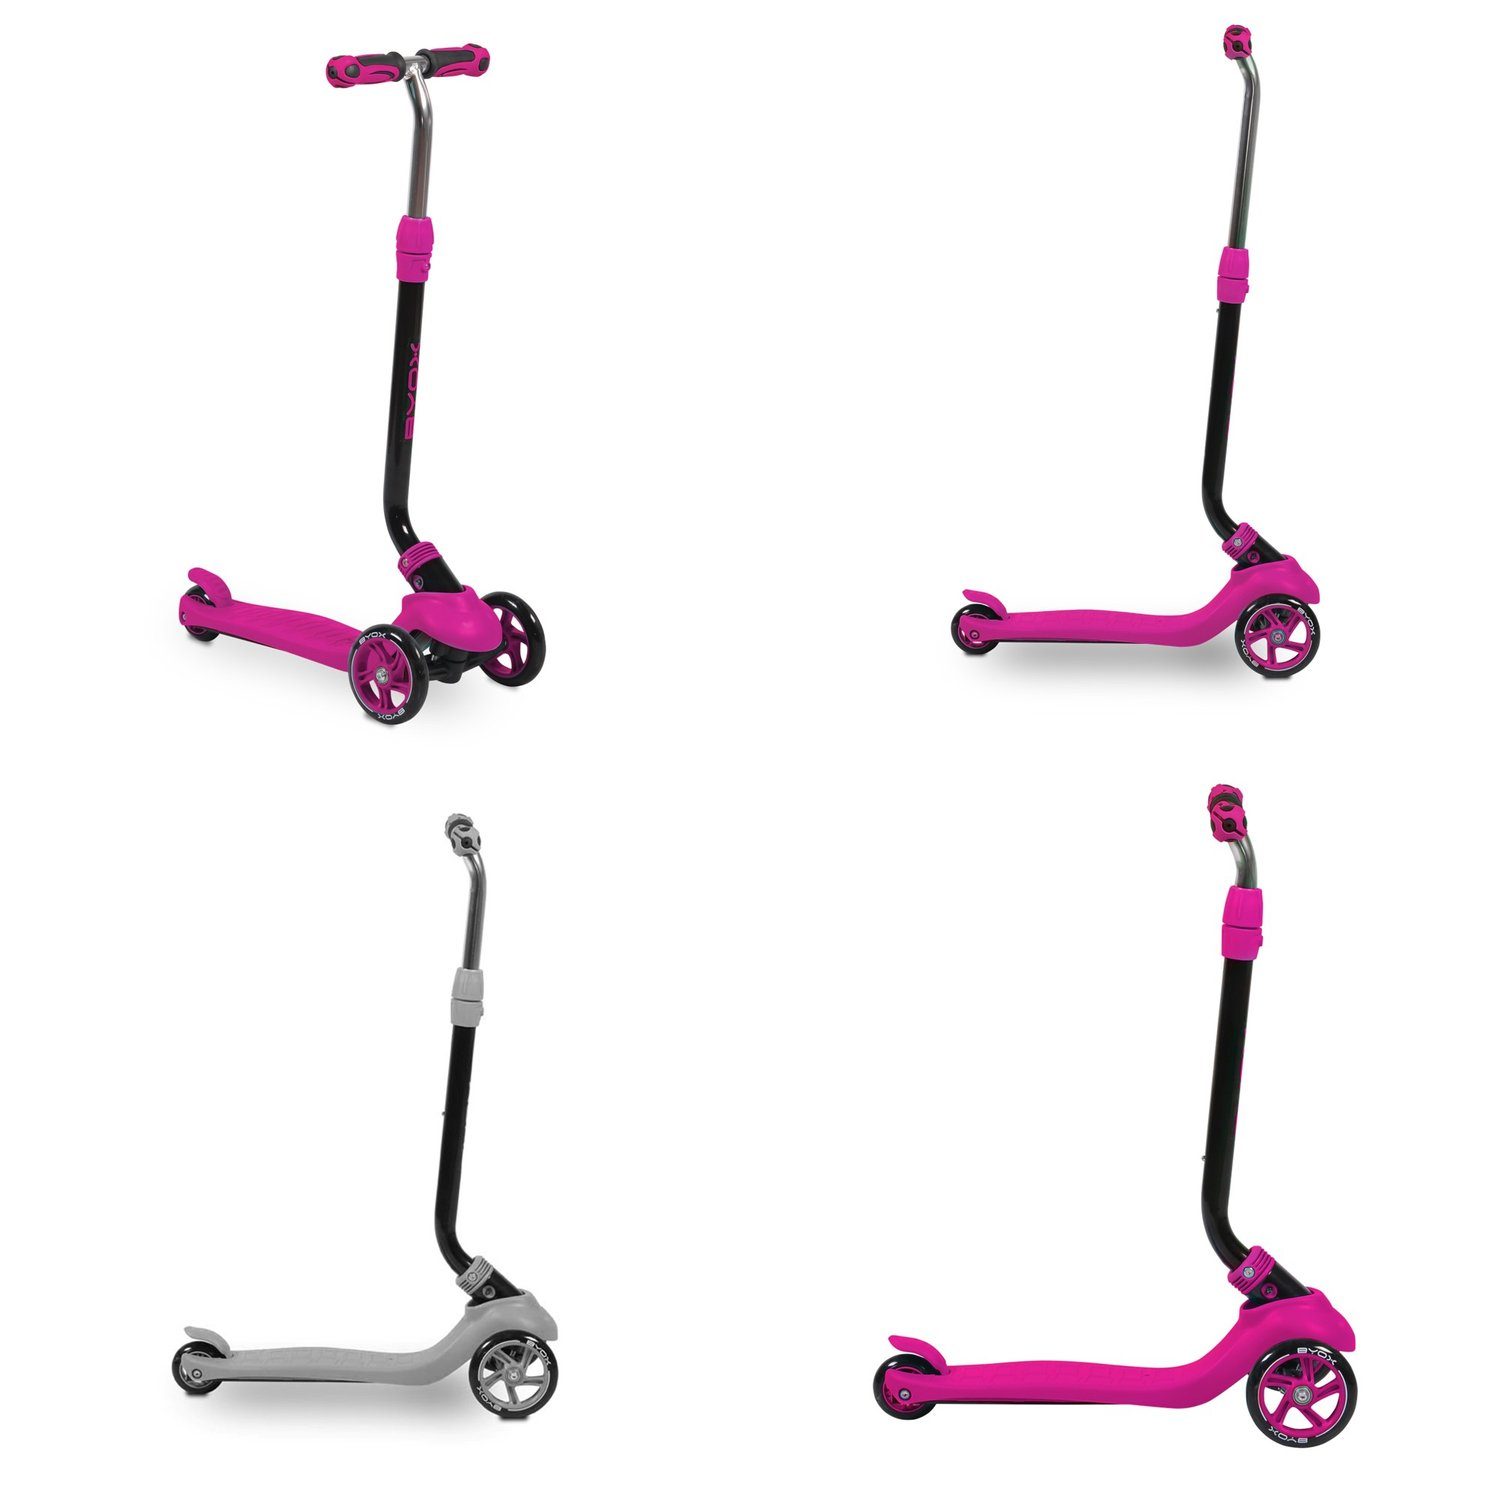 Schiebestange Kinderroller Cityroller Roller PU Rutscher pink in Byox Tristar 1, 3 ABEC-5 Räder